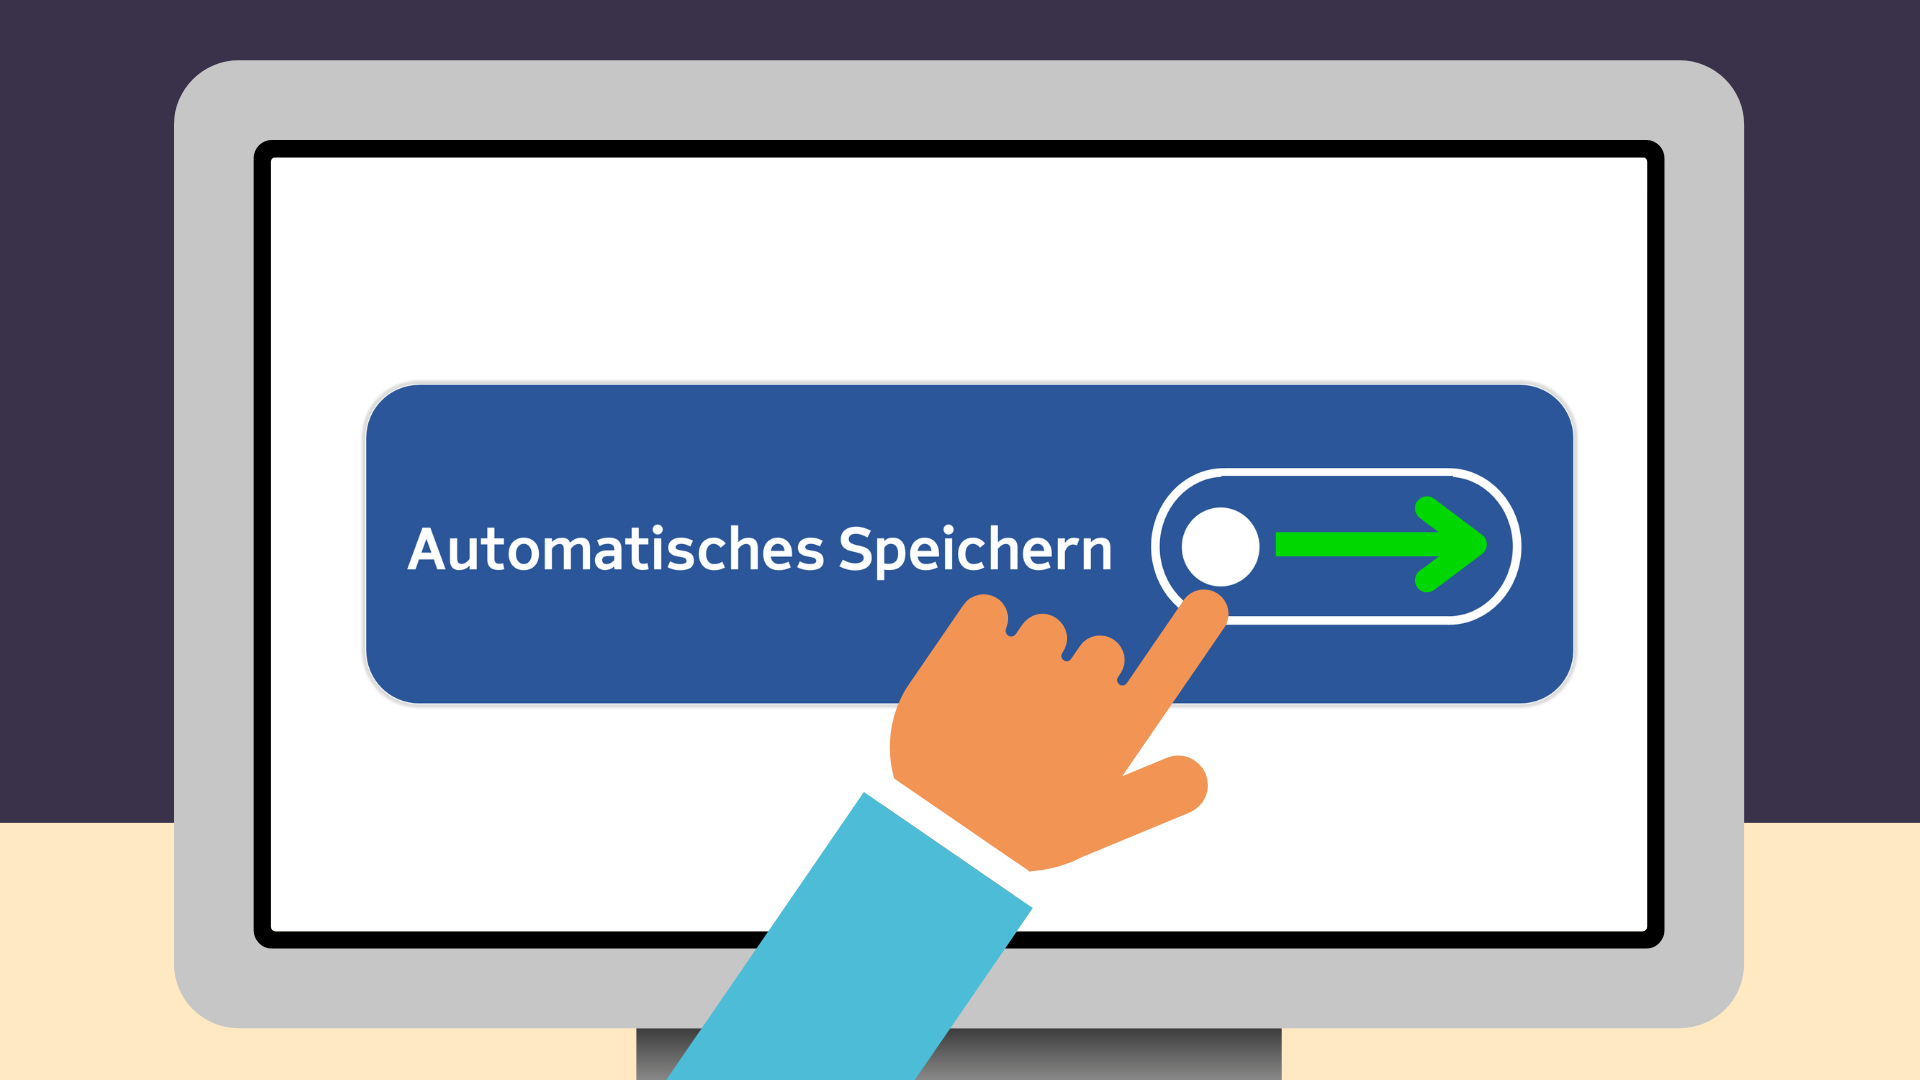 Bildschirm mit großem "Automatisch Speichern" Button. Eine Hand zieht den Ein/Aus Knopf von links nach rechts.